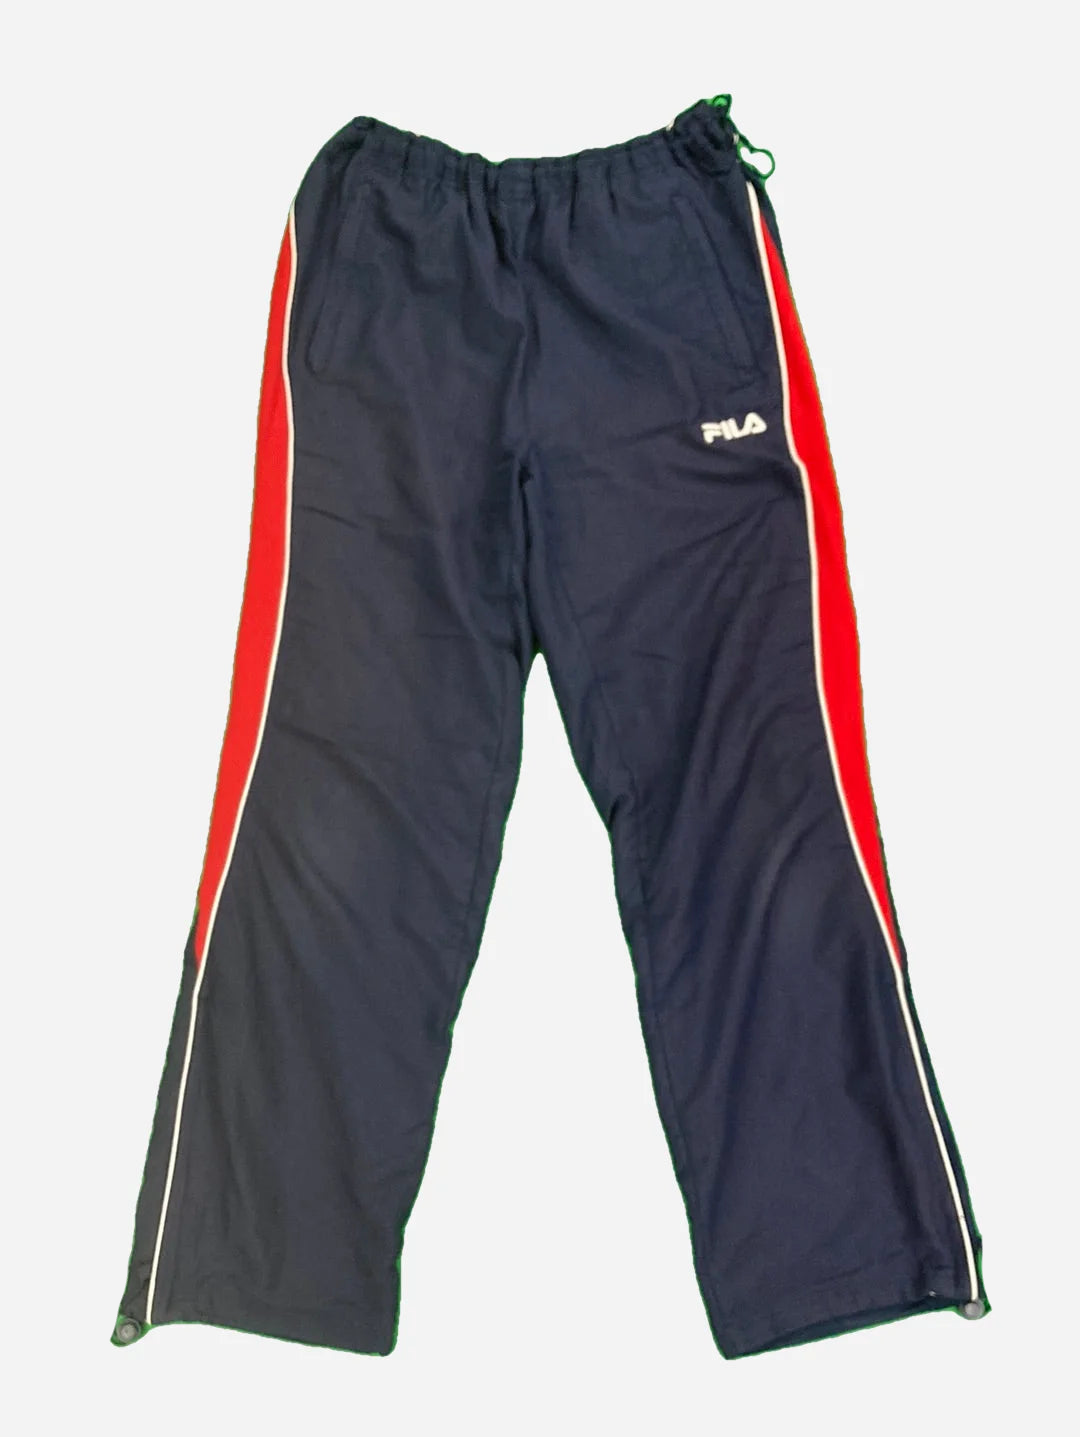 Fila Track Pants (M)